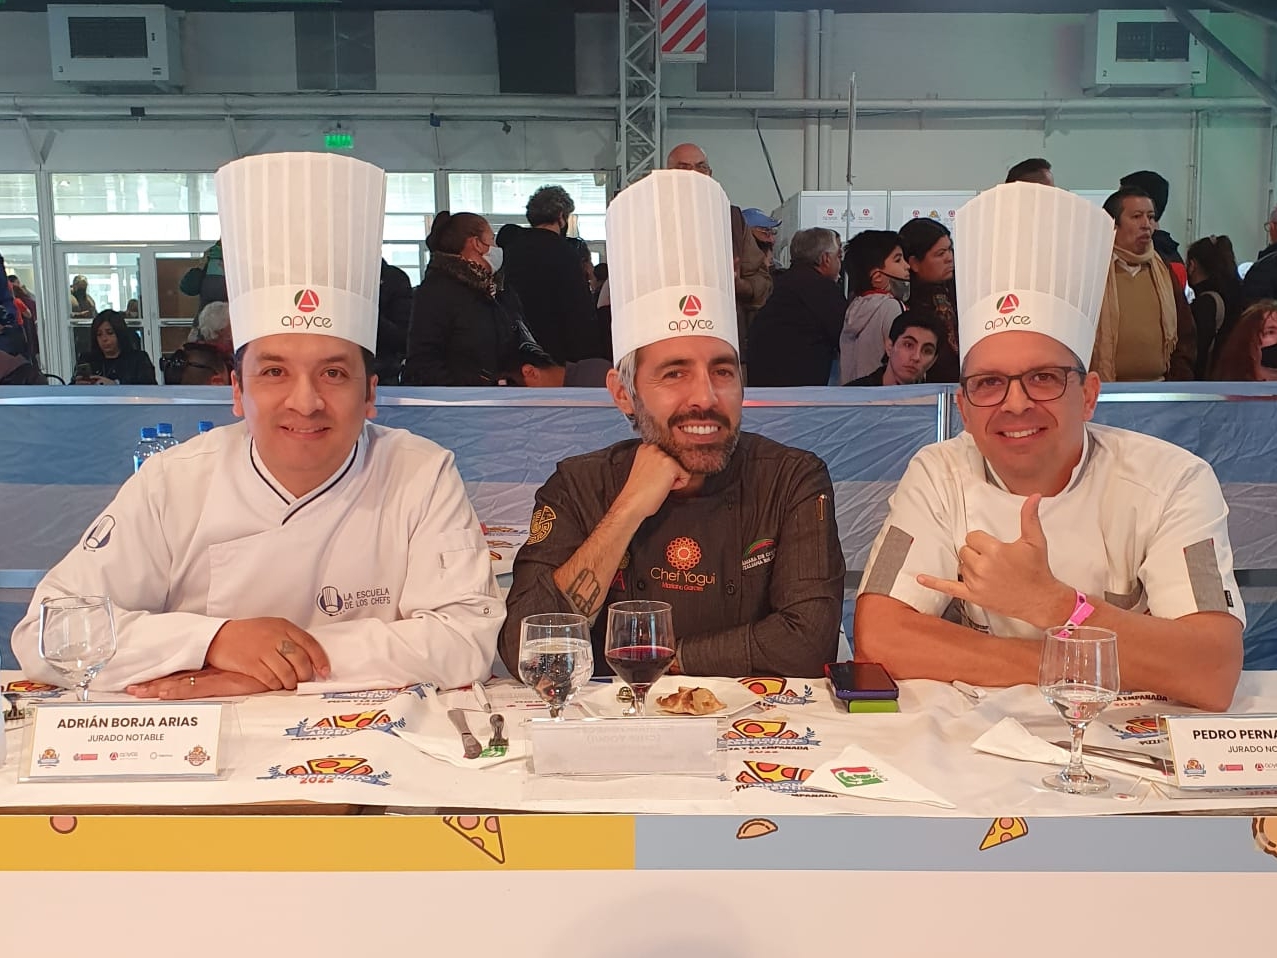 Juez ecuatoriano en el Campeonato Panamericano de la Pizza en Argentina |  Gastronomia | Entretenimiento | El Universo